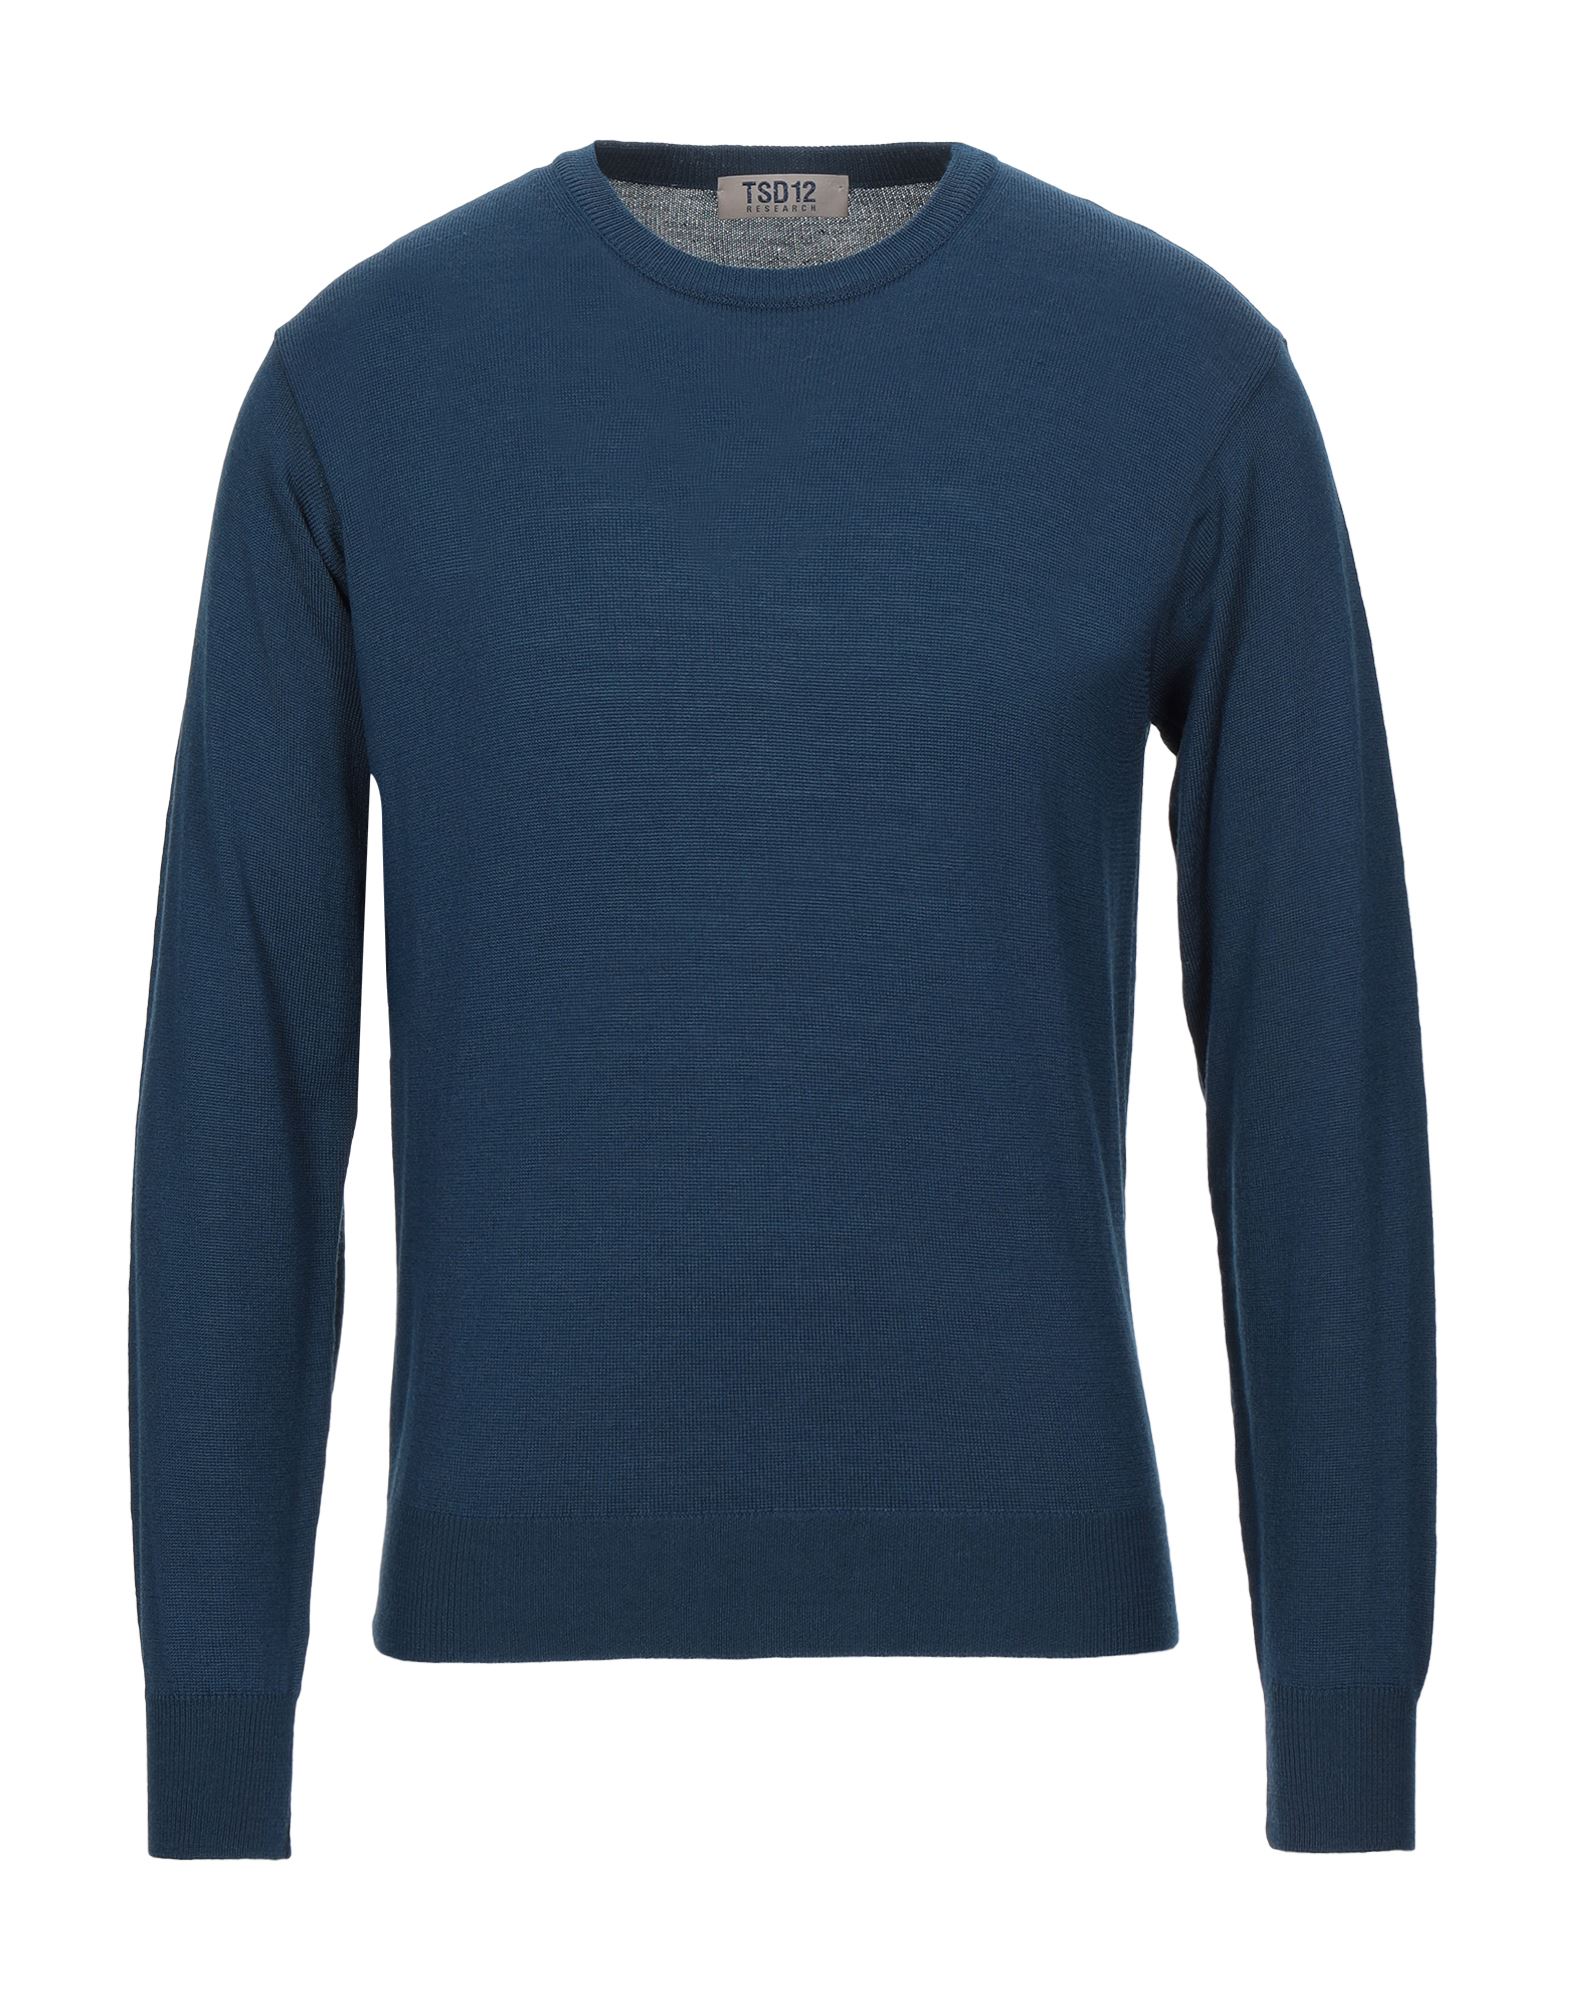 Tsd12 Sweaters In Slate Blue